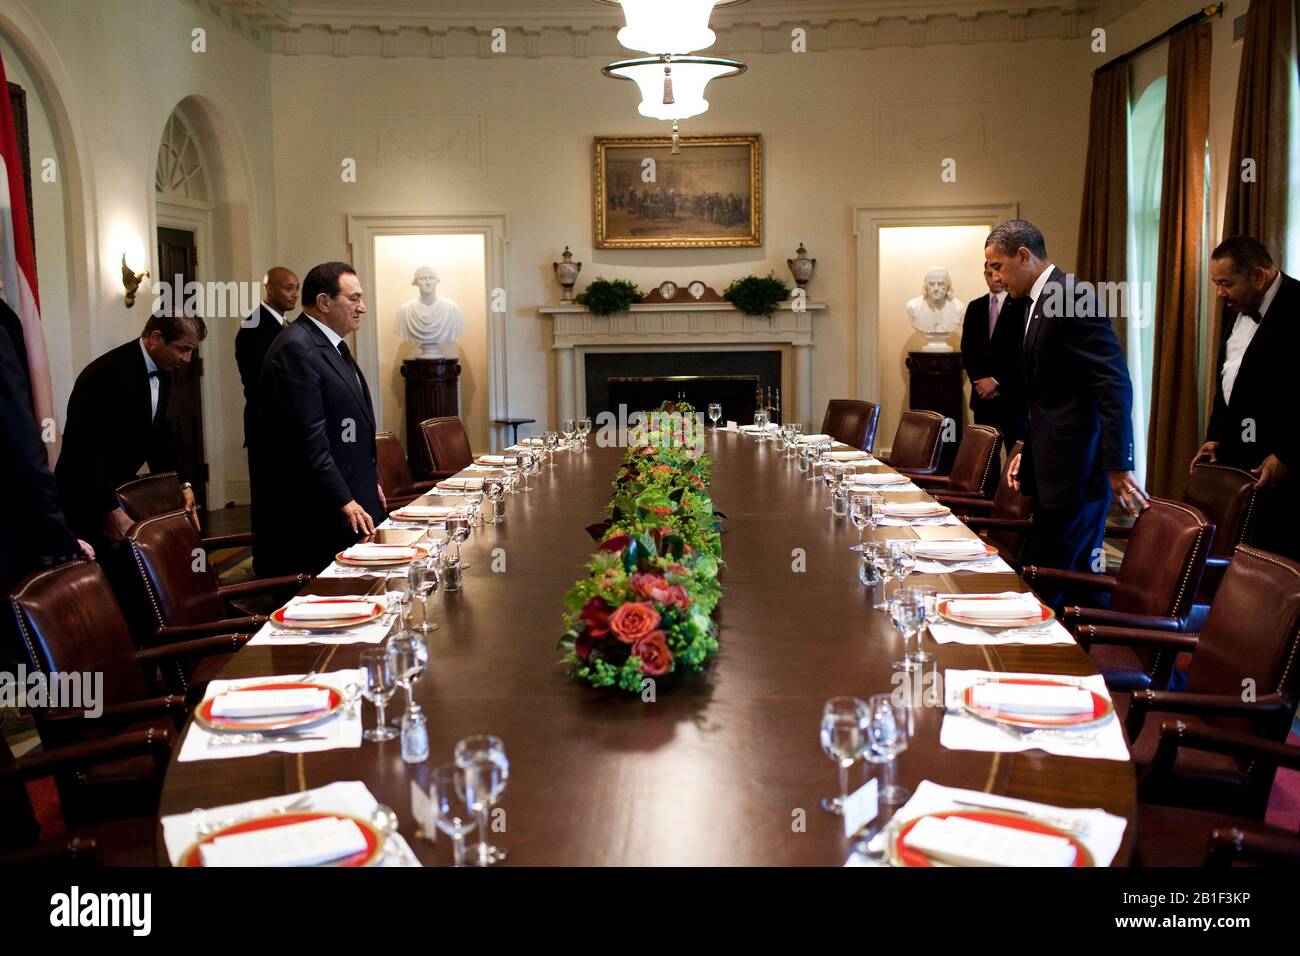 Washington, DC - 18. August 2009 -- US-Präsident Barack Obama und Präsident Hosni Mubarak aus Ägypten nähern sich dem Tisch zu Beginn eines Arbeitsessen im Kabinettsraum des Weißen Hauses, 18. August 2009.Mandatory Credit: Pete Souza - Weiße Haus über CNP/MediaPunch Stockfoto